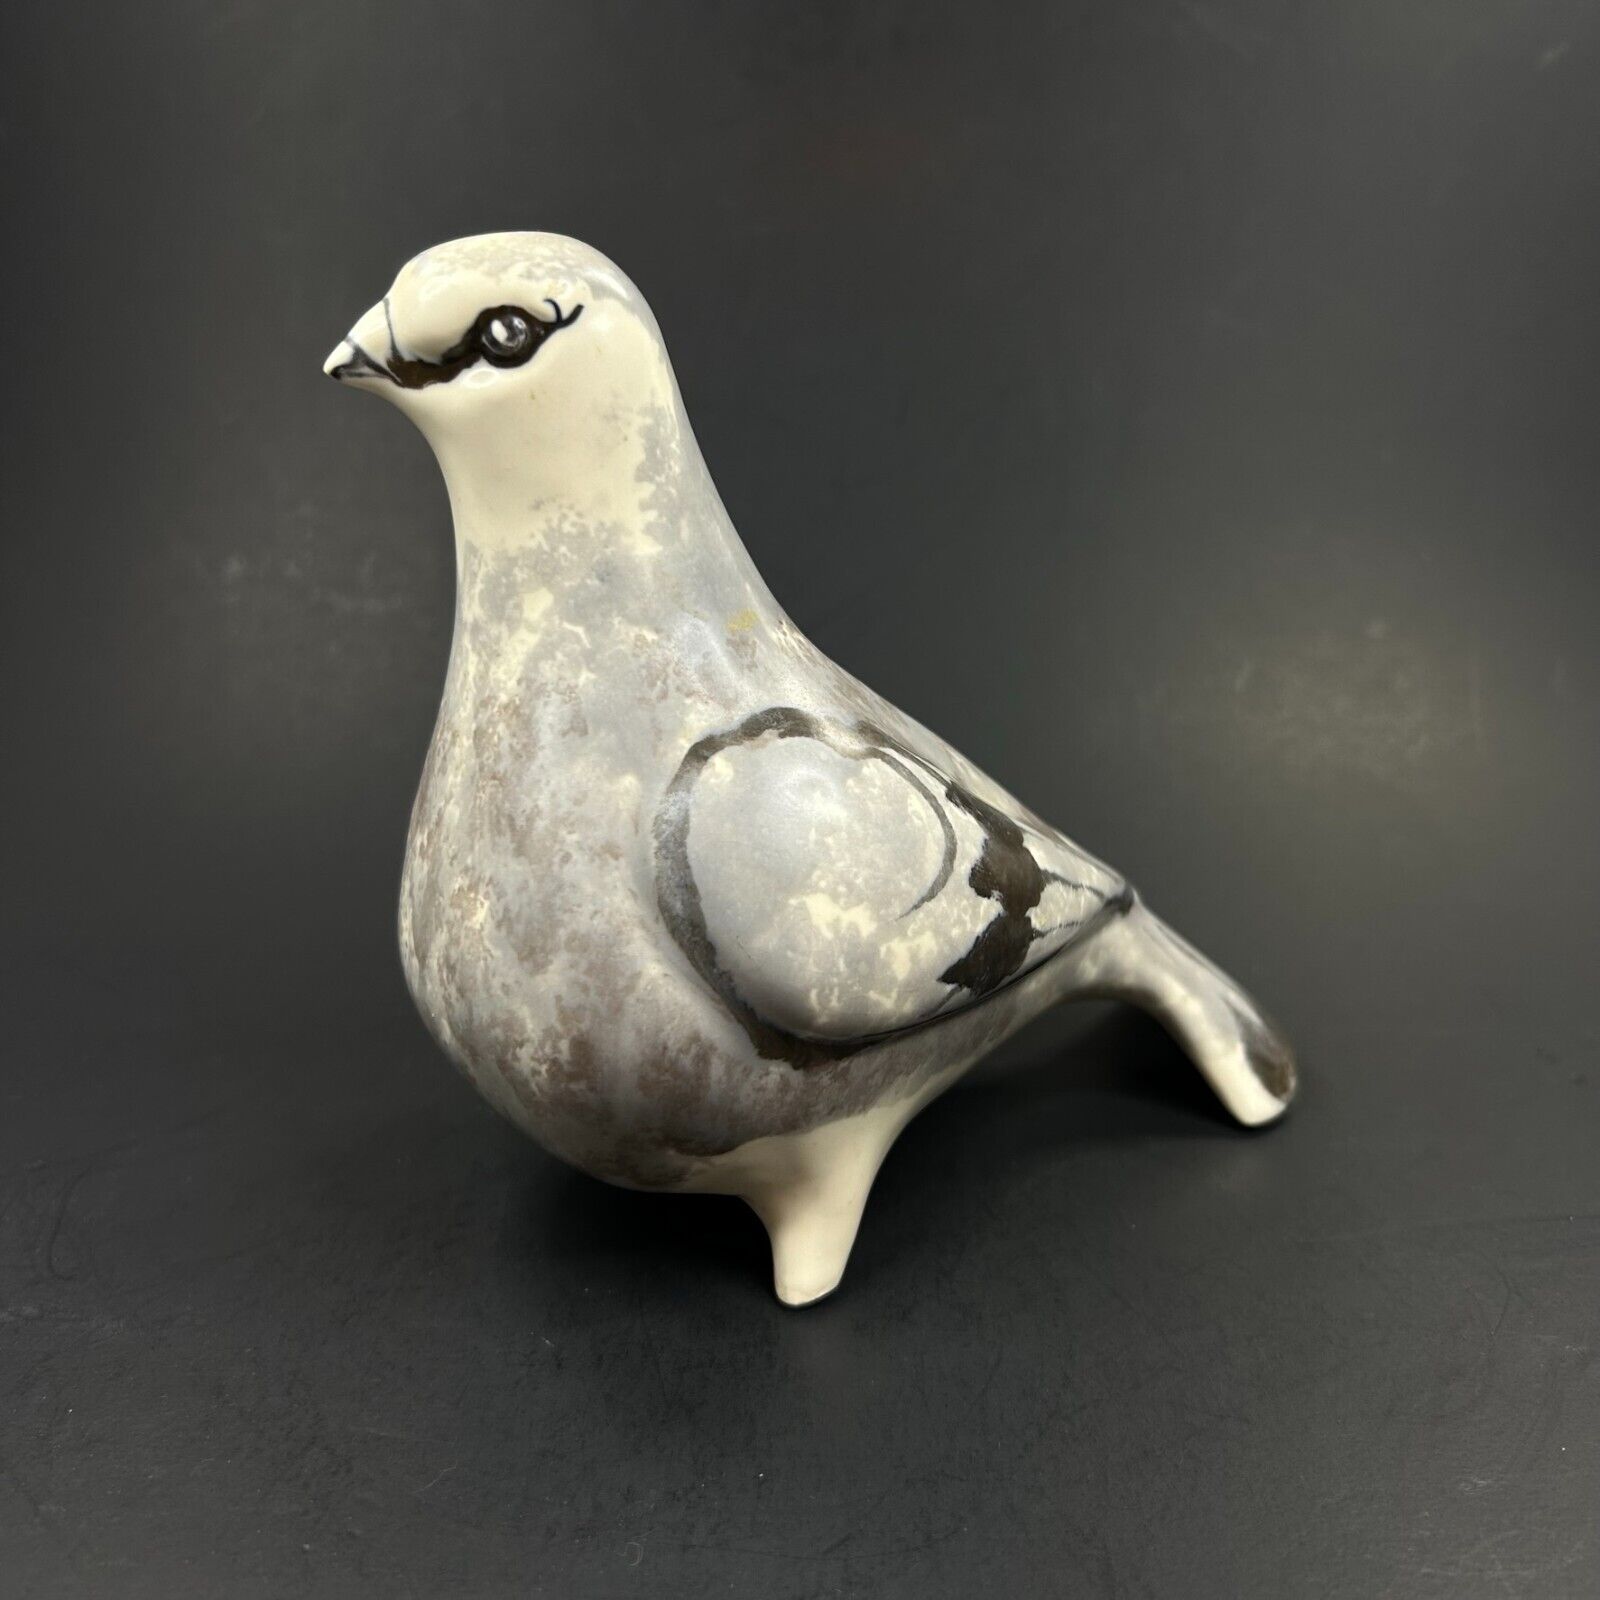 Aviemore Pottery Turtle Dove Clay Sculpture Glazed Gray Black Cream Scotland